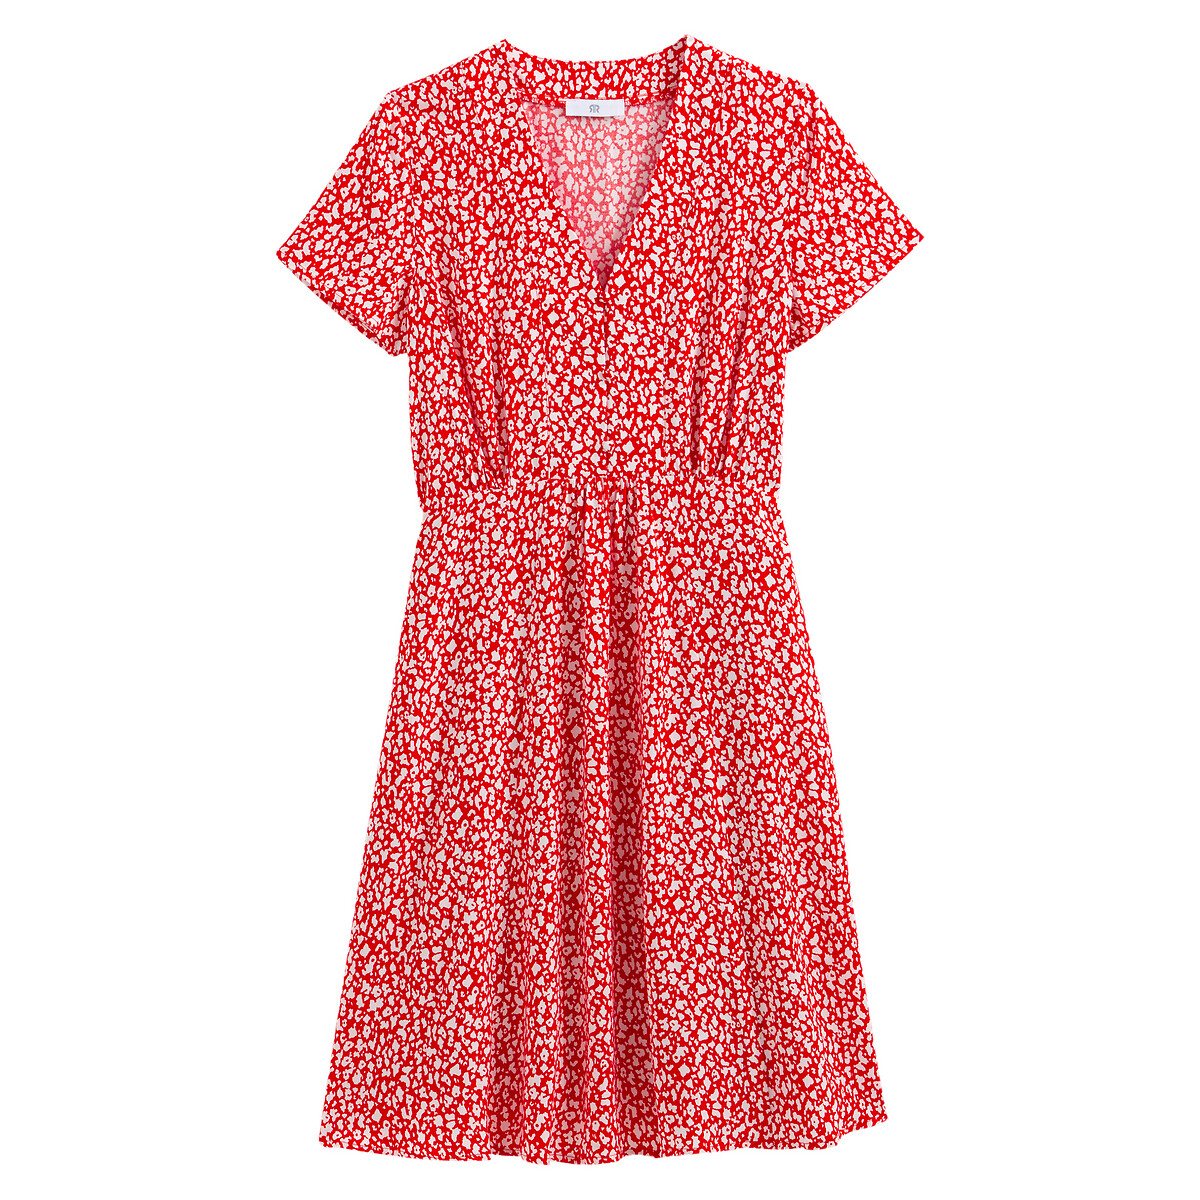 Платье LaRedoute С V-образным вырезом короткими рукавами с принтом 52 (FR) - 58 (RUS) красный, размер 52 (FR) - 58 (RUS) С V-образным вырезом короткими рукавами с принтом 52 (FR) - 58 (RUS) красный - фото 5